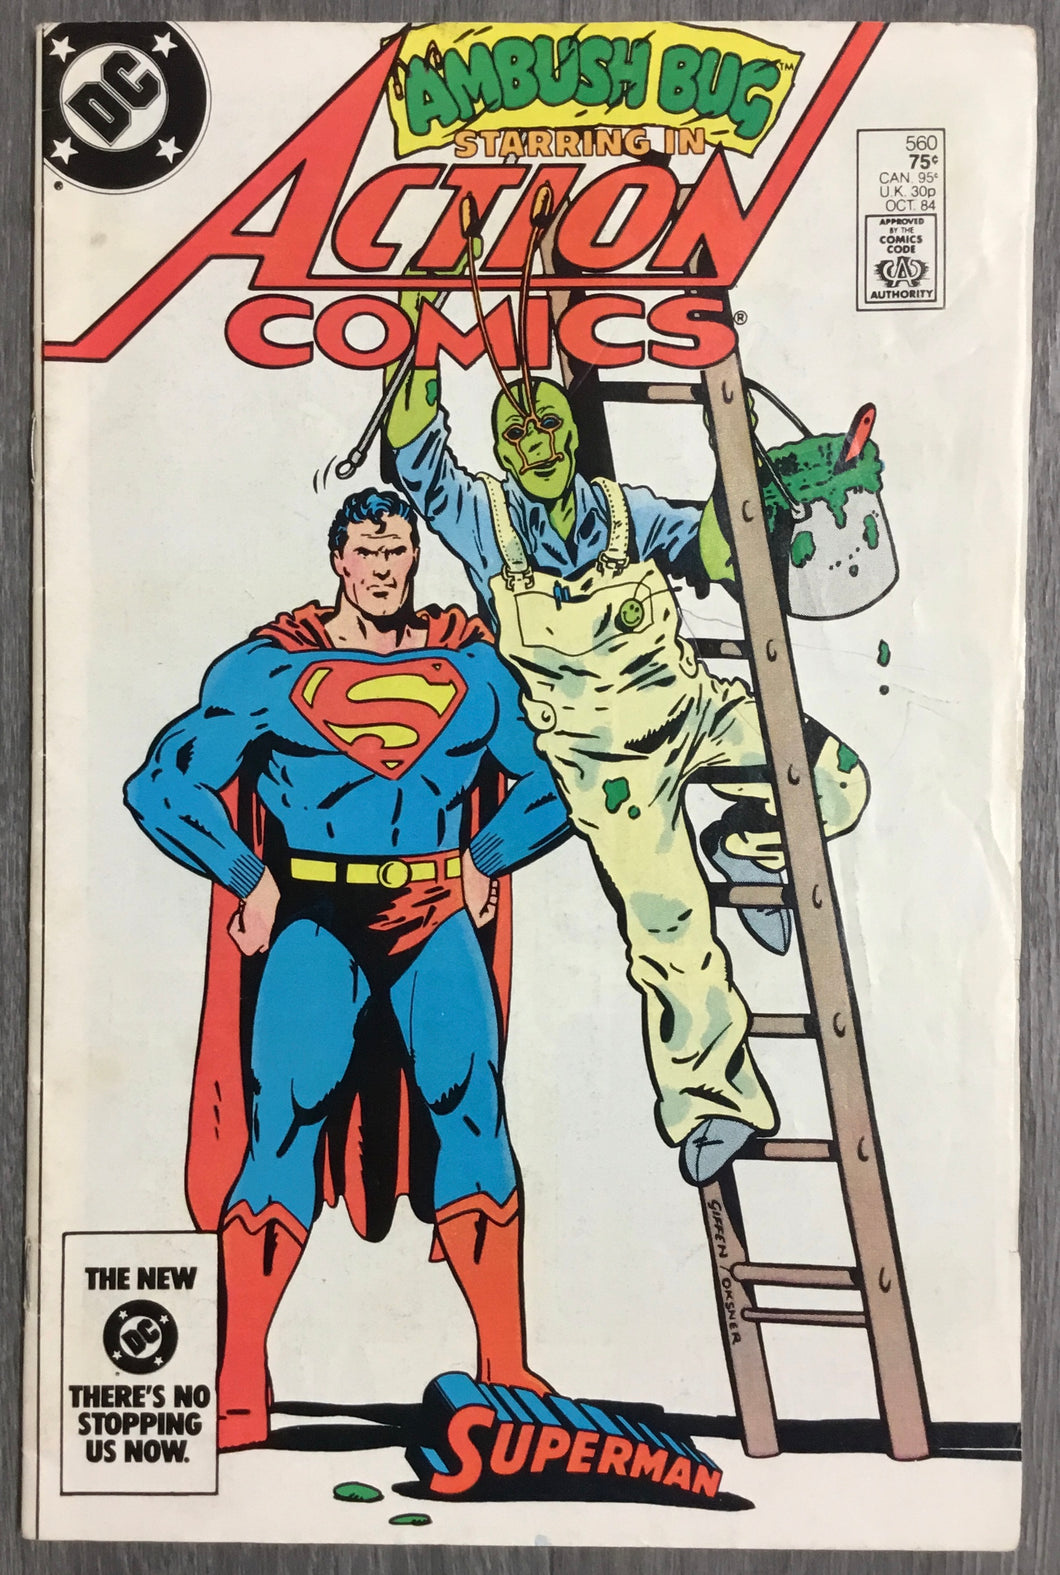 Action Comics No. #560 1984 DC Comics